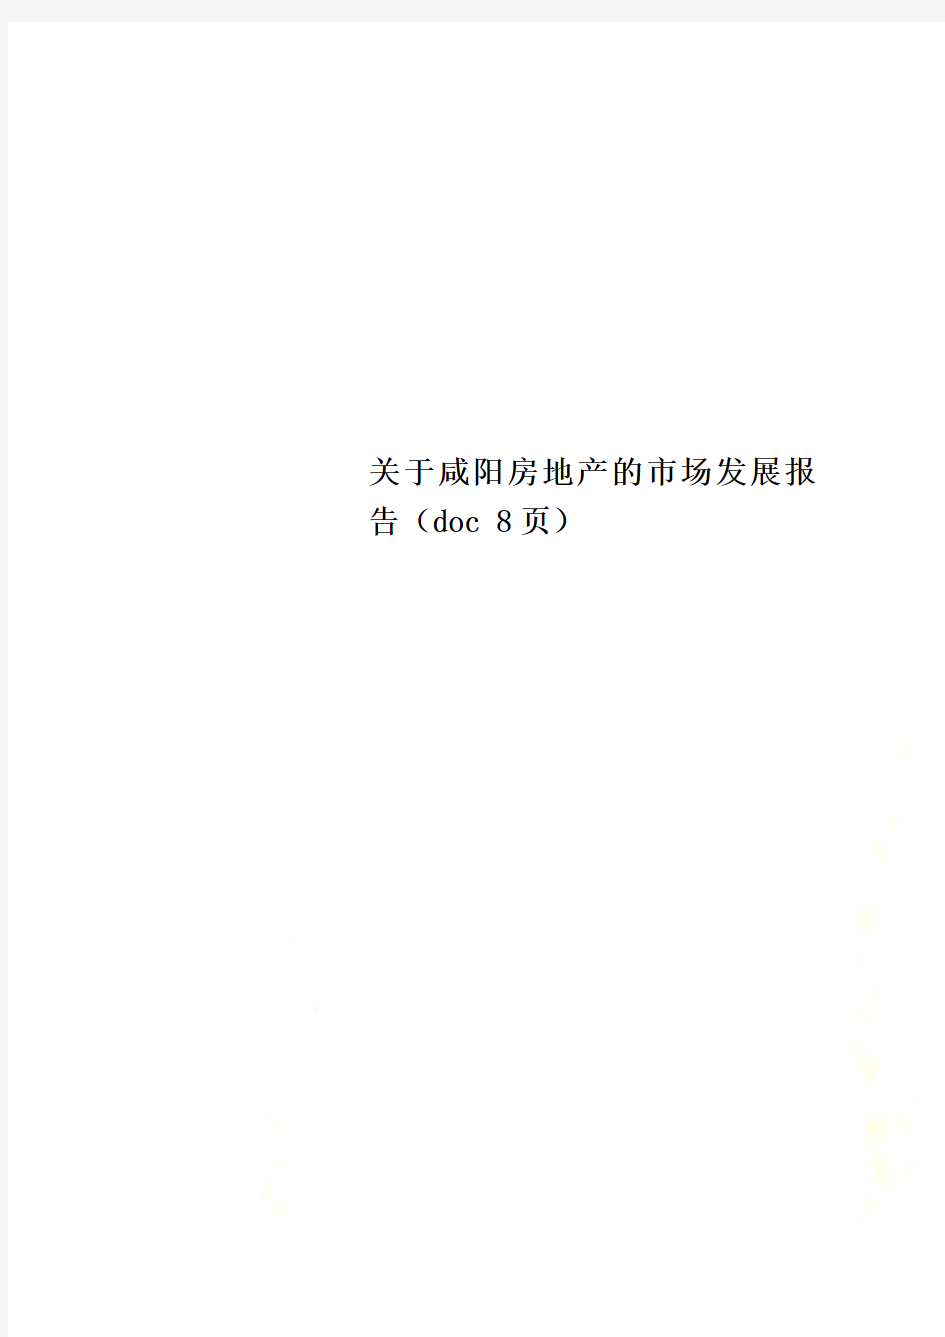 关于咸阳房地产的市场发展报告(doc 8页)